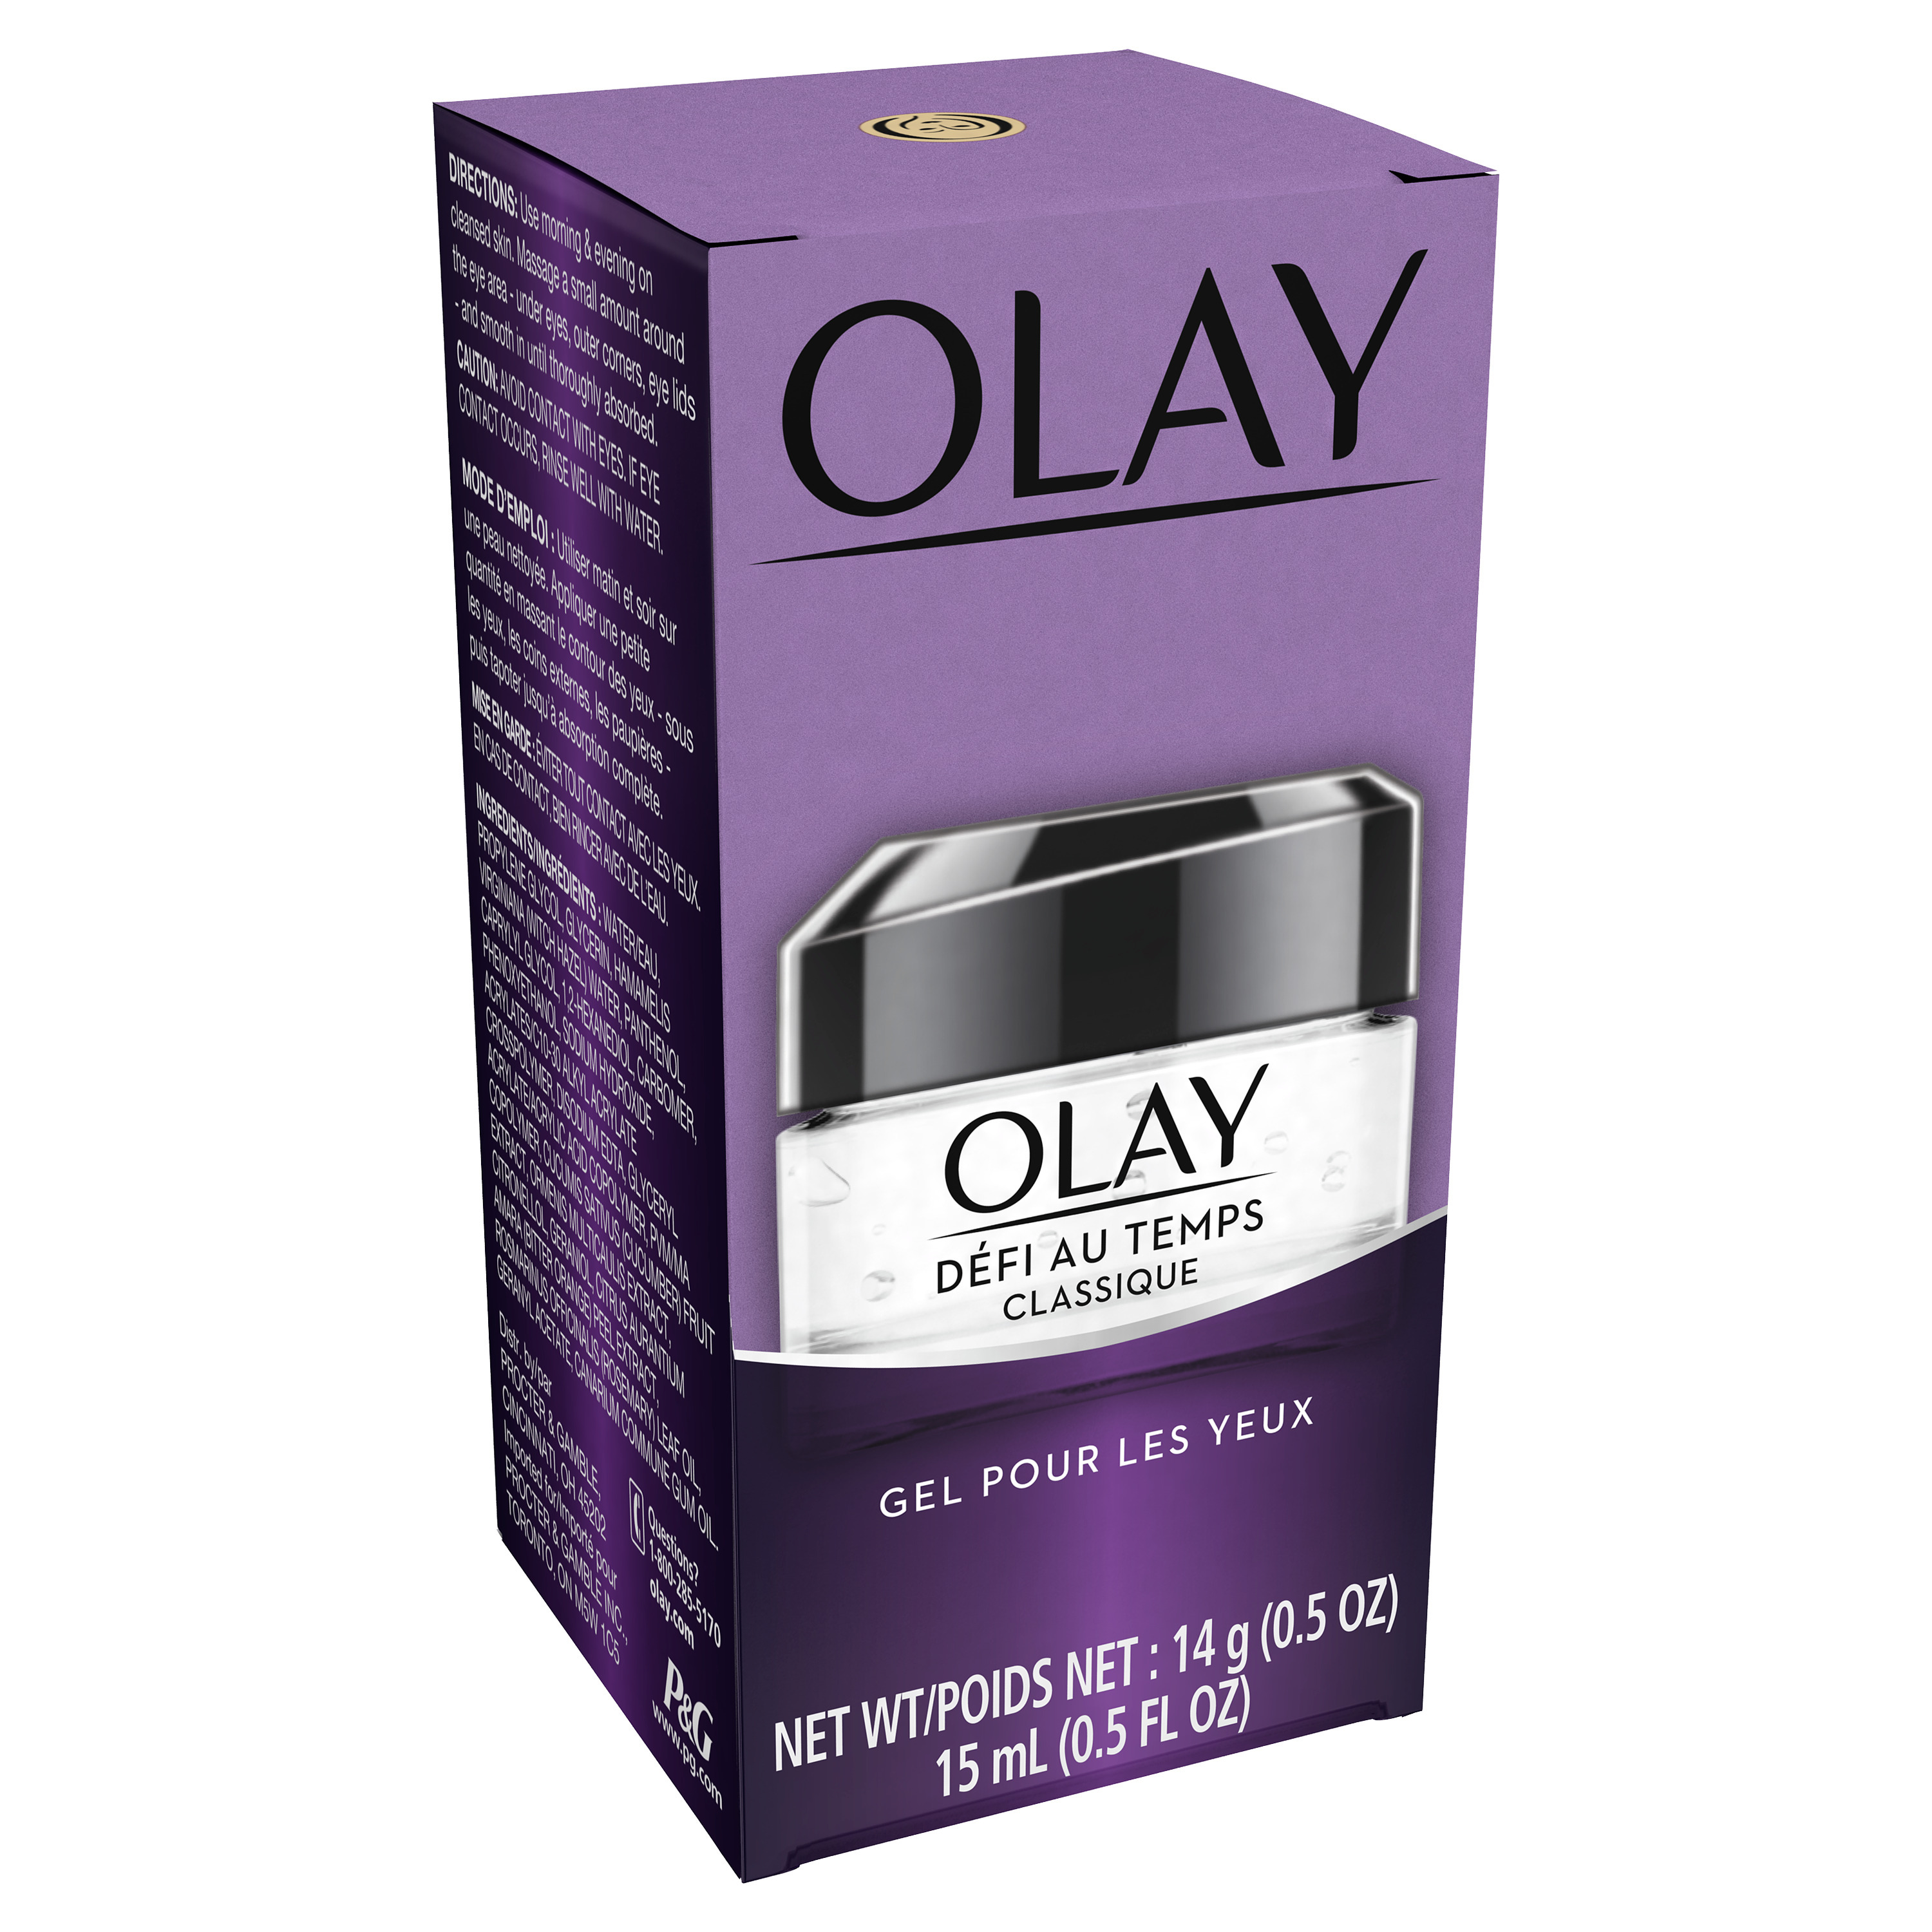 Olay Age Defying Classic Eye Gel, 0.5 oz - image 3 of 6